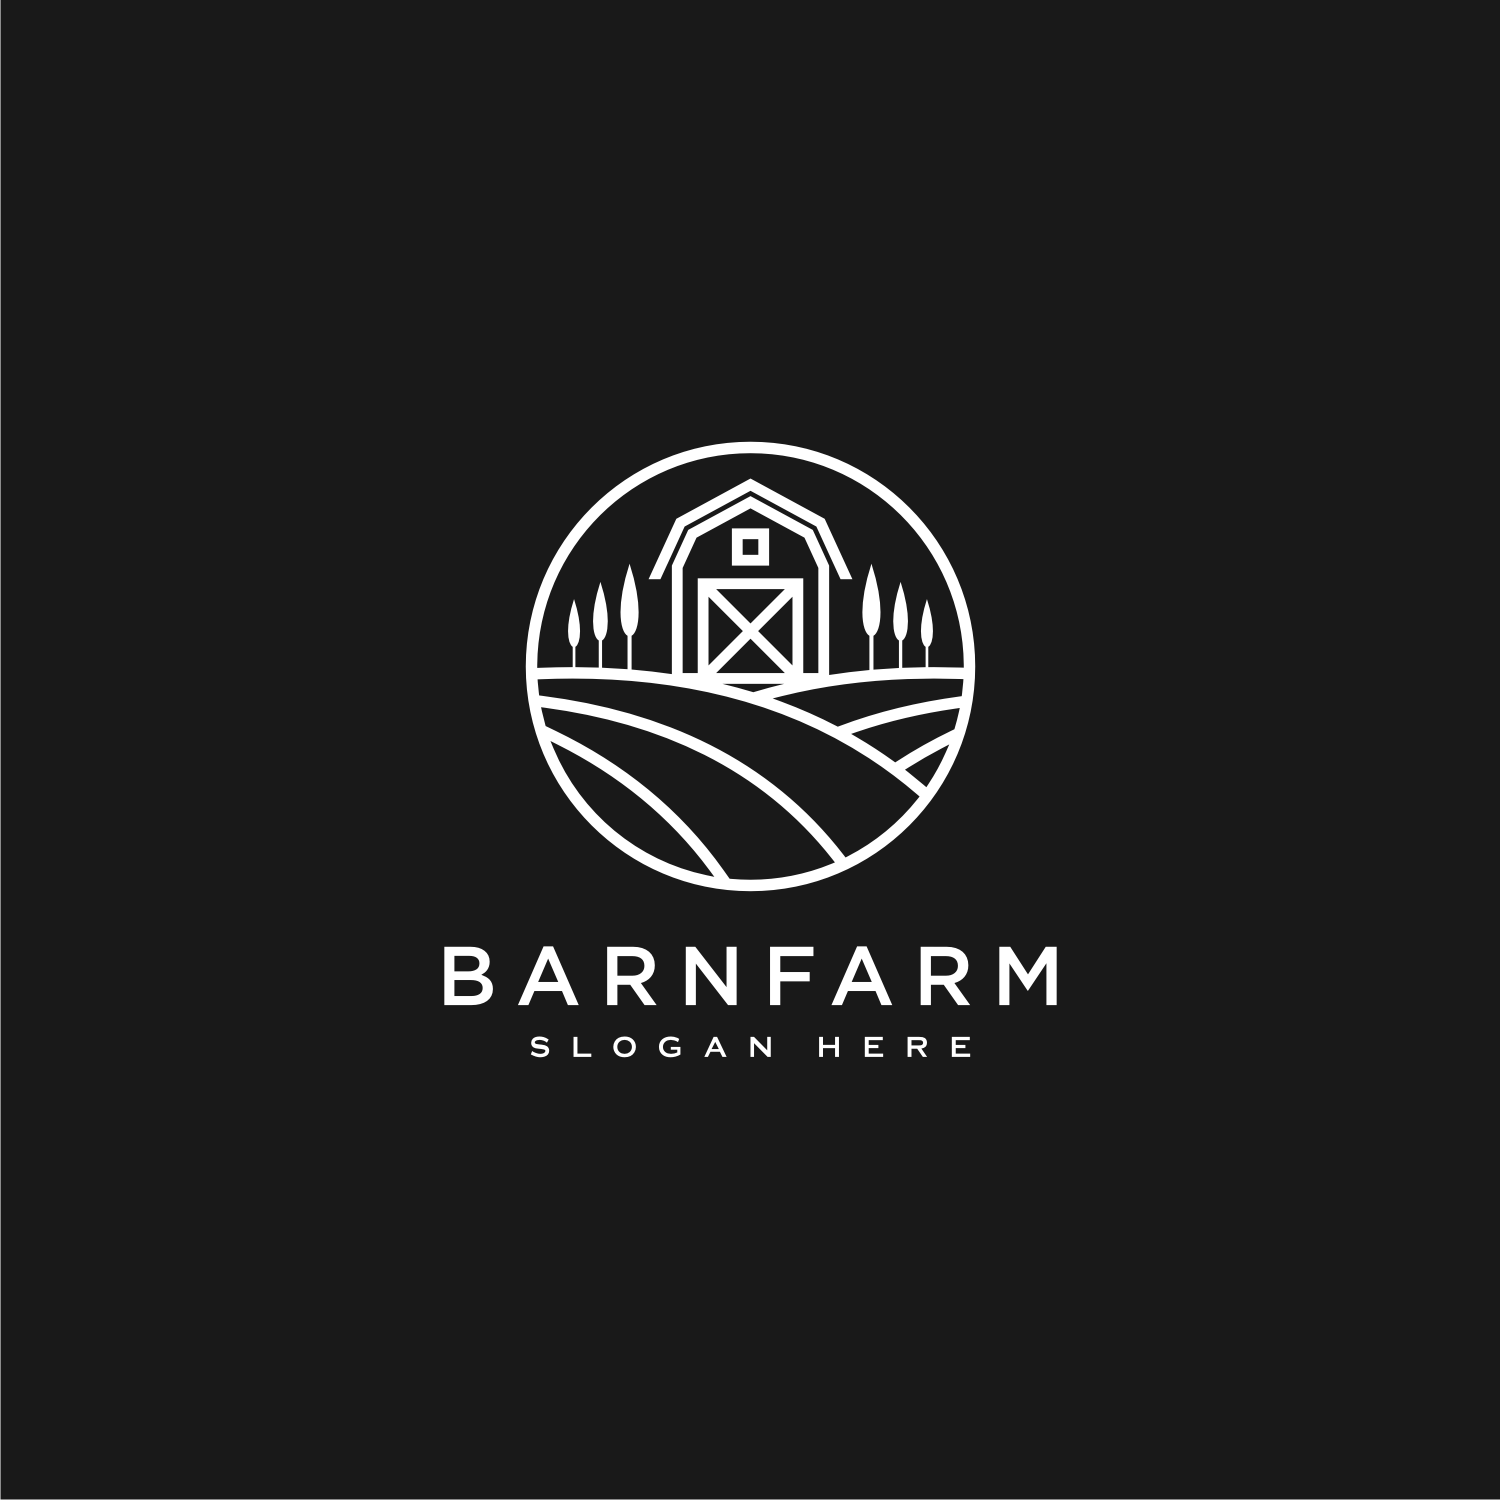 Set of Home Farm Logo Vector Design